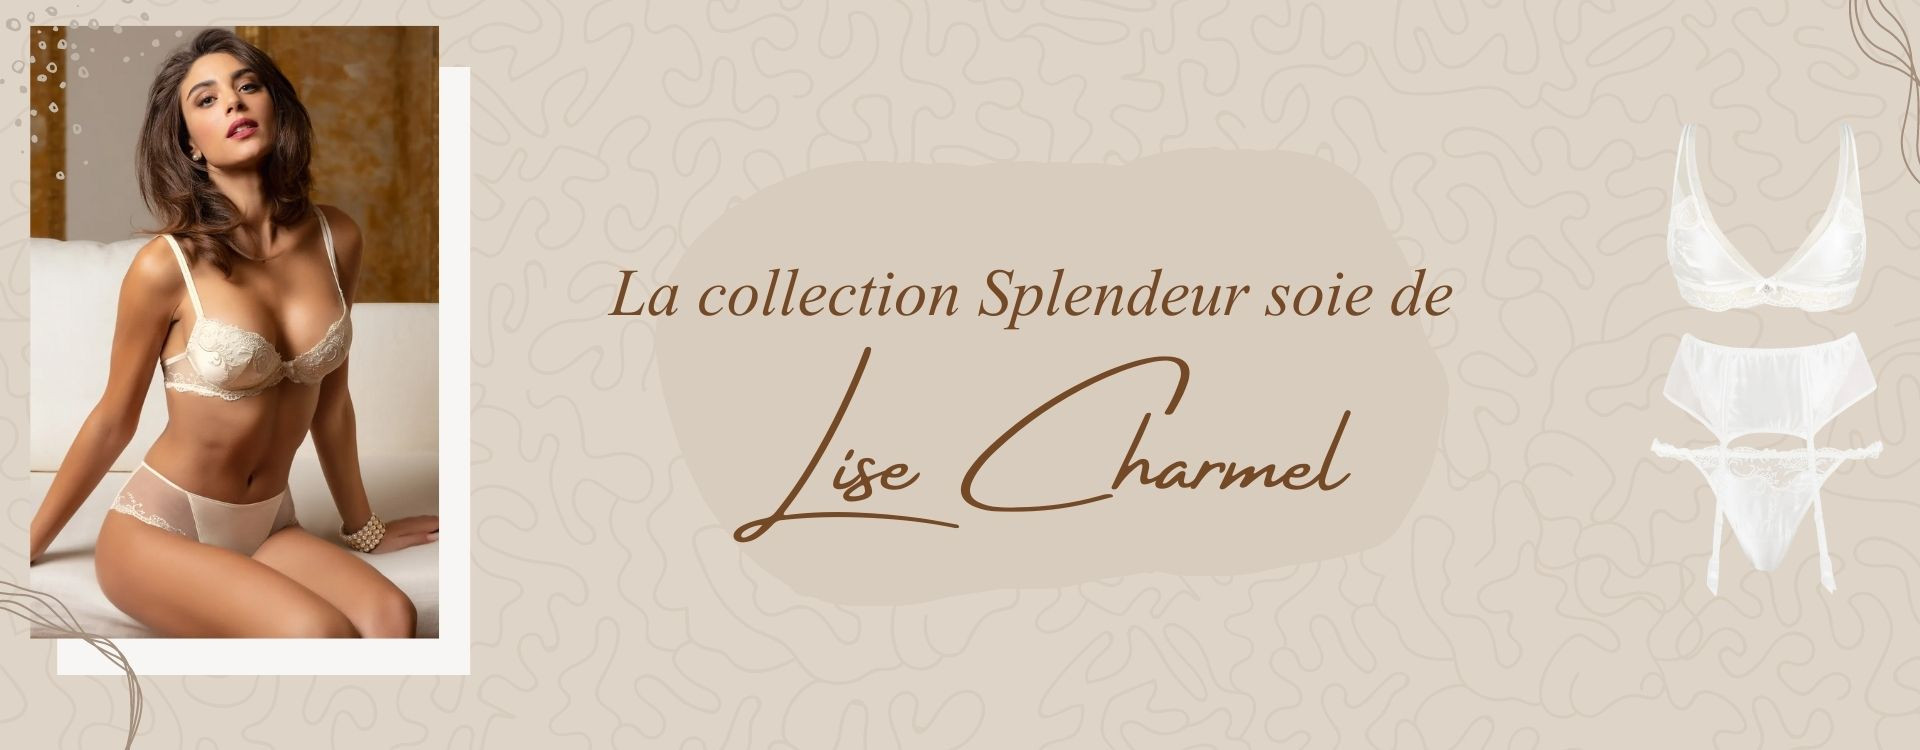 La collection Splendeur Soie de Lise Charmel